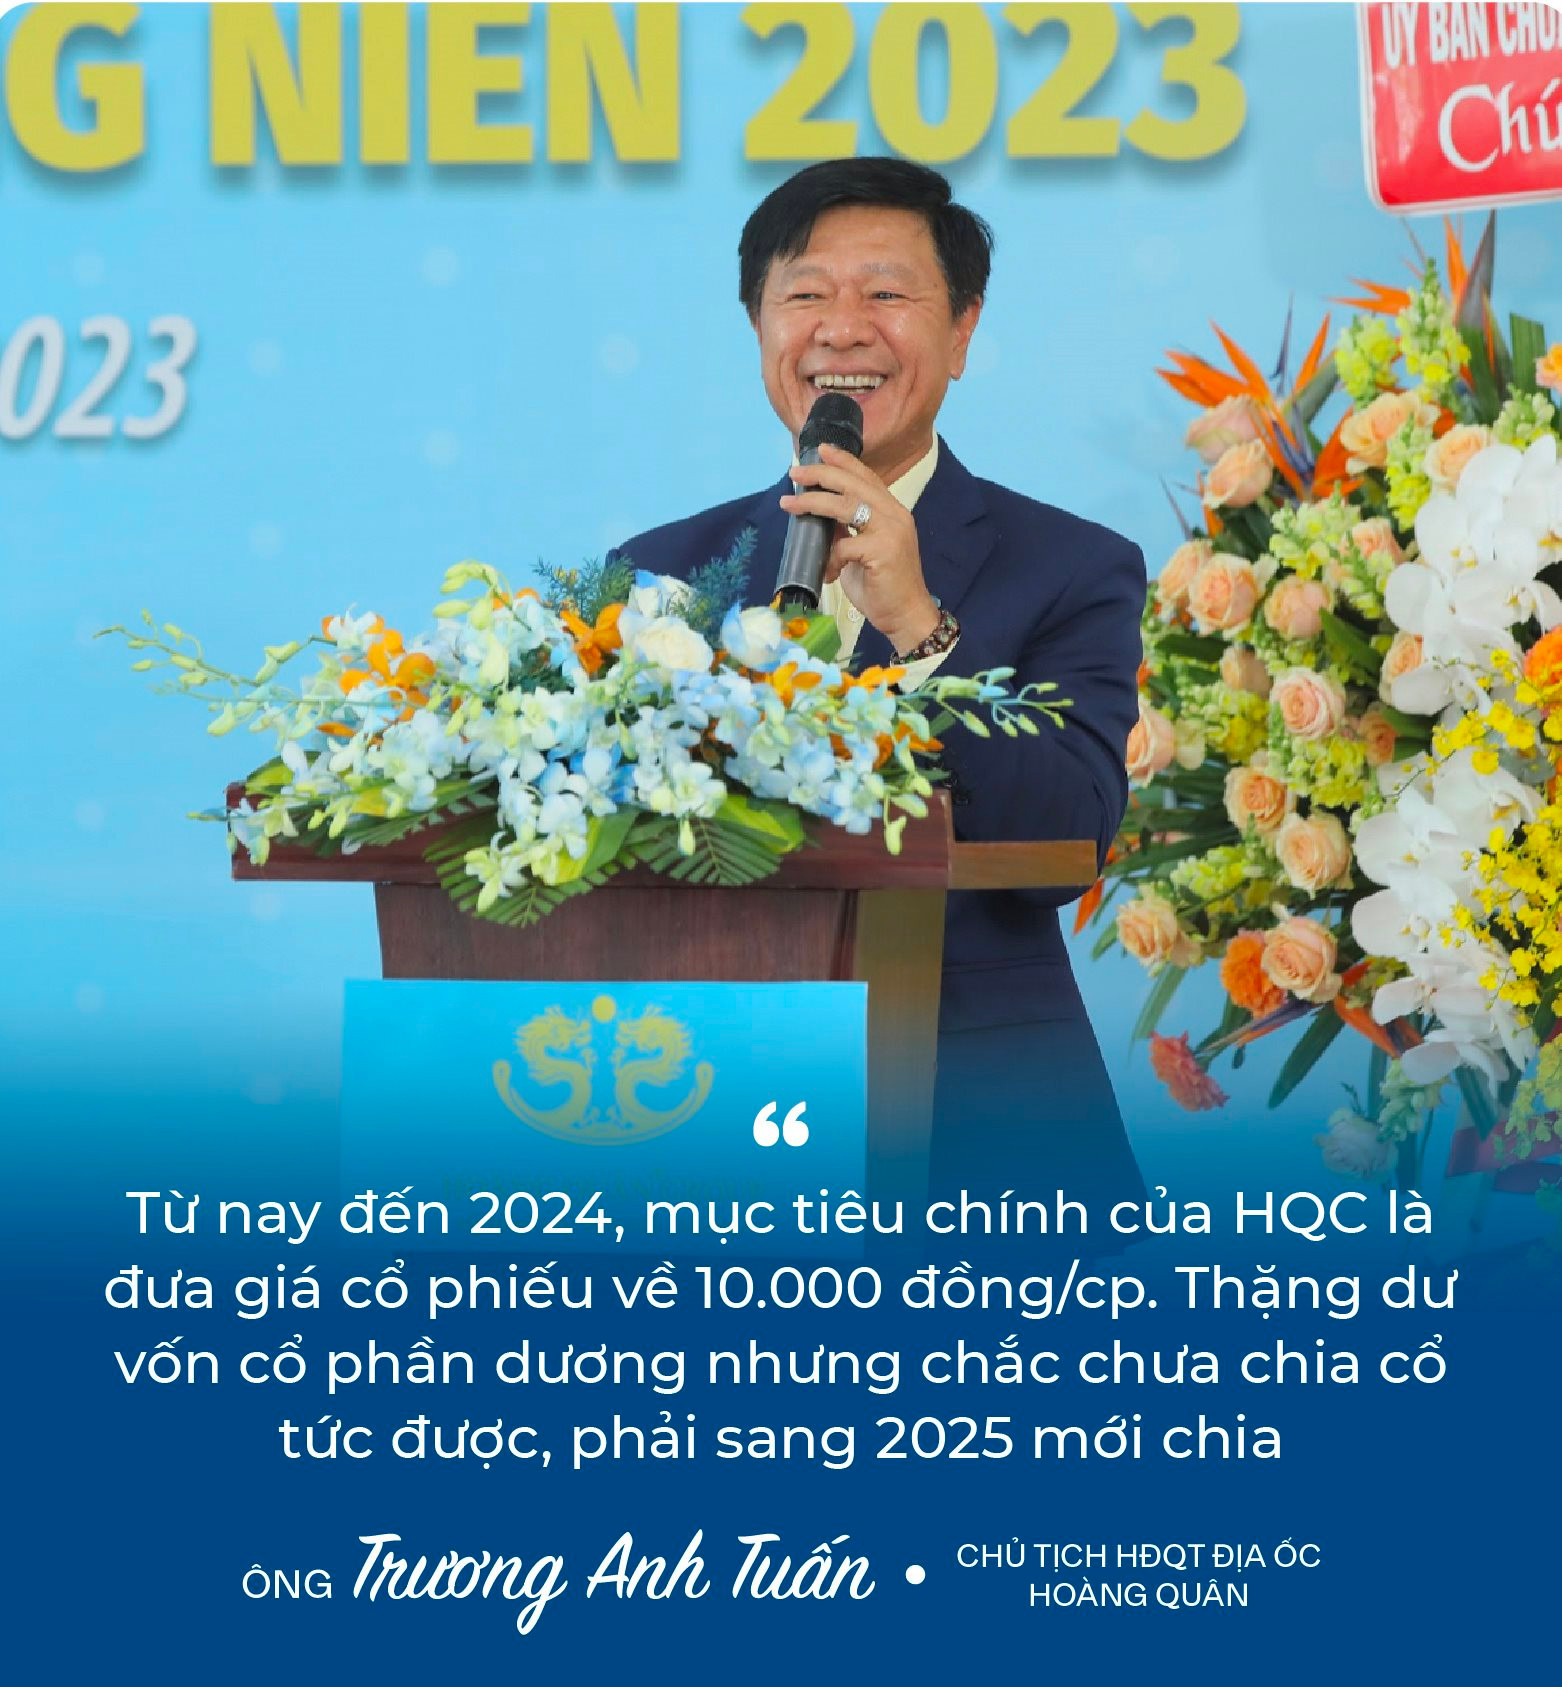 Chủ tịch Trương Anh Tuấn: ﻿“8 năm rồi Hoàng Quân (HQC) không đạt kế hoạch, và tôi cũng nói thật năm nay chưa chắc đạt” - Ảnh 4.